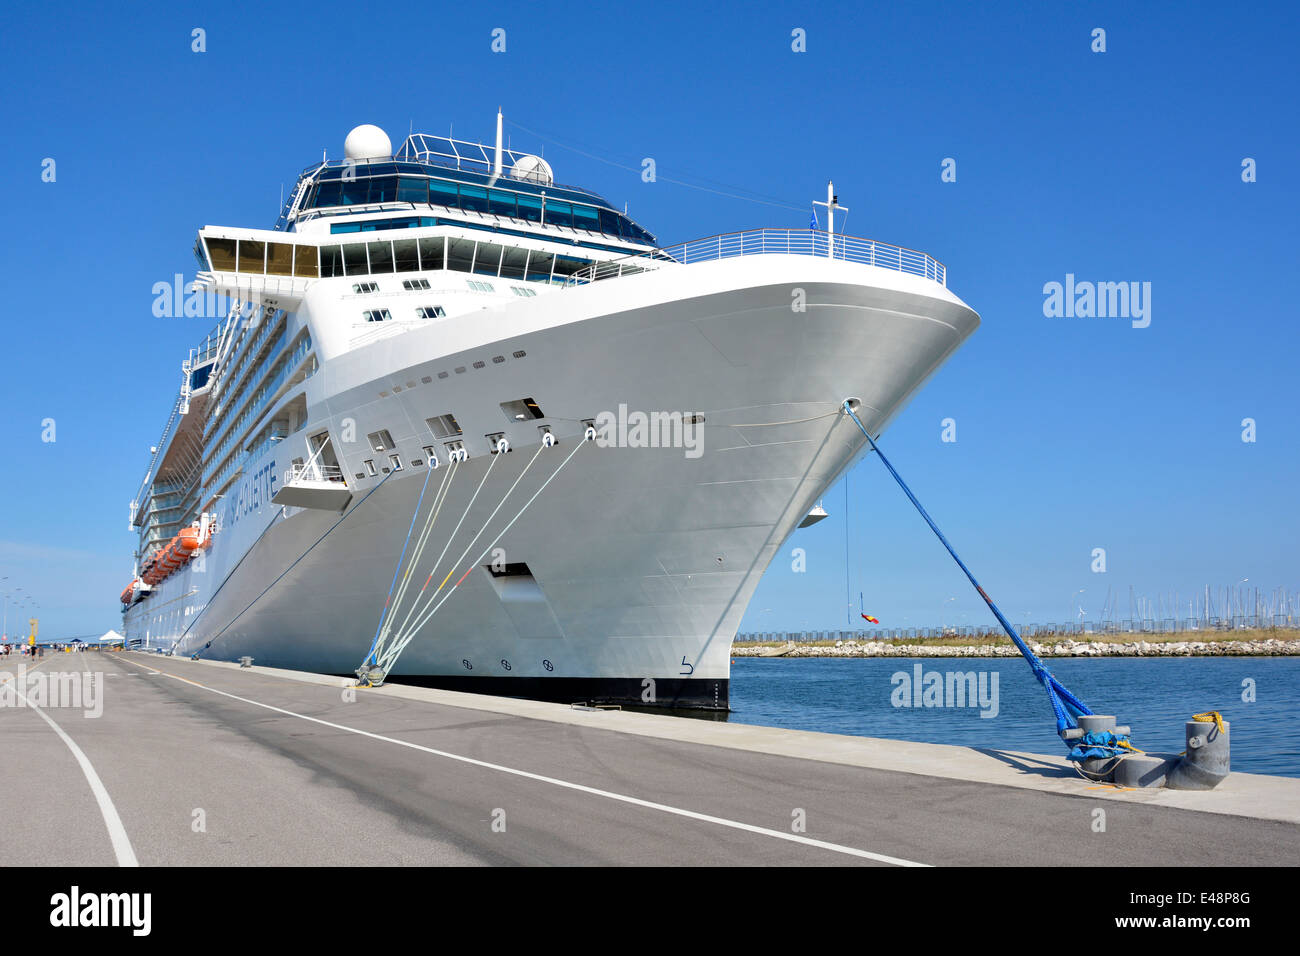 Aussières d'amarrage bow fixation de Celebrity Cruises «silhouette' liner amarré au port Corsini au terminal de croisière de Ravenne Banque D'Images